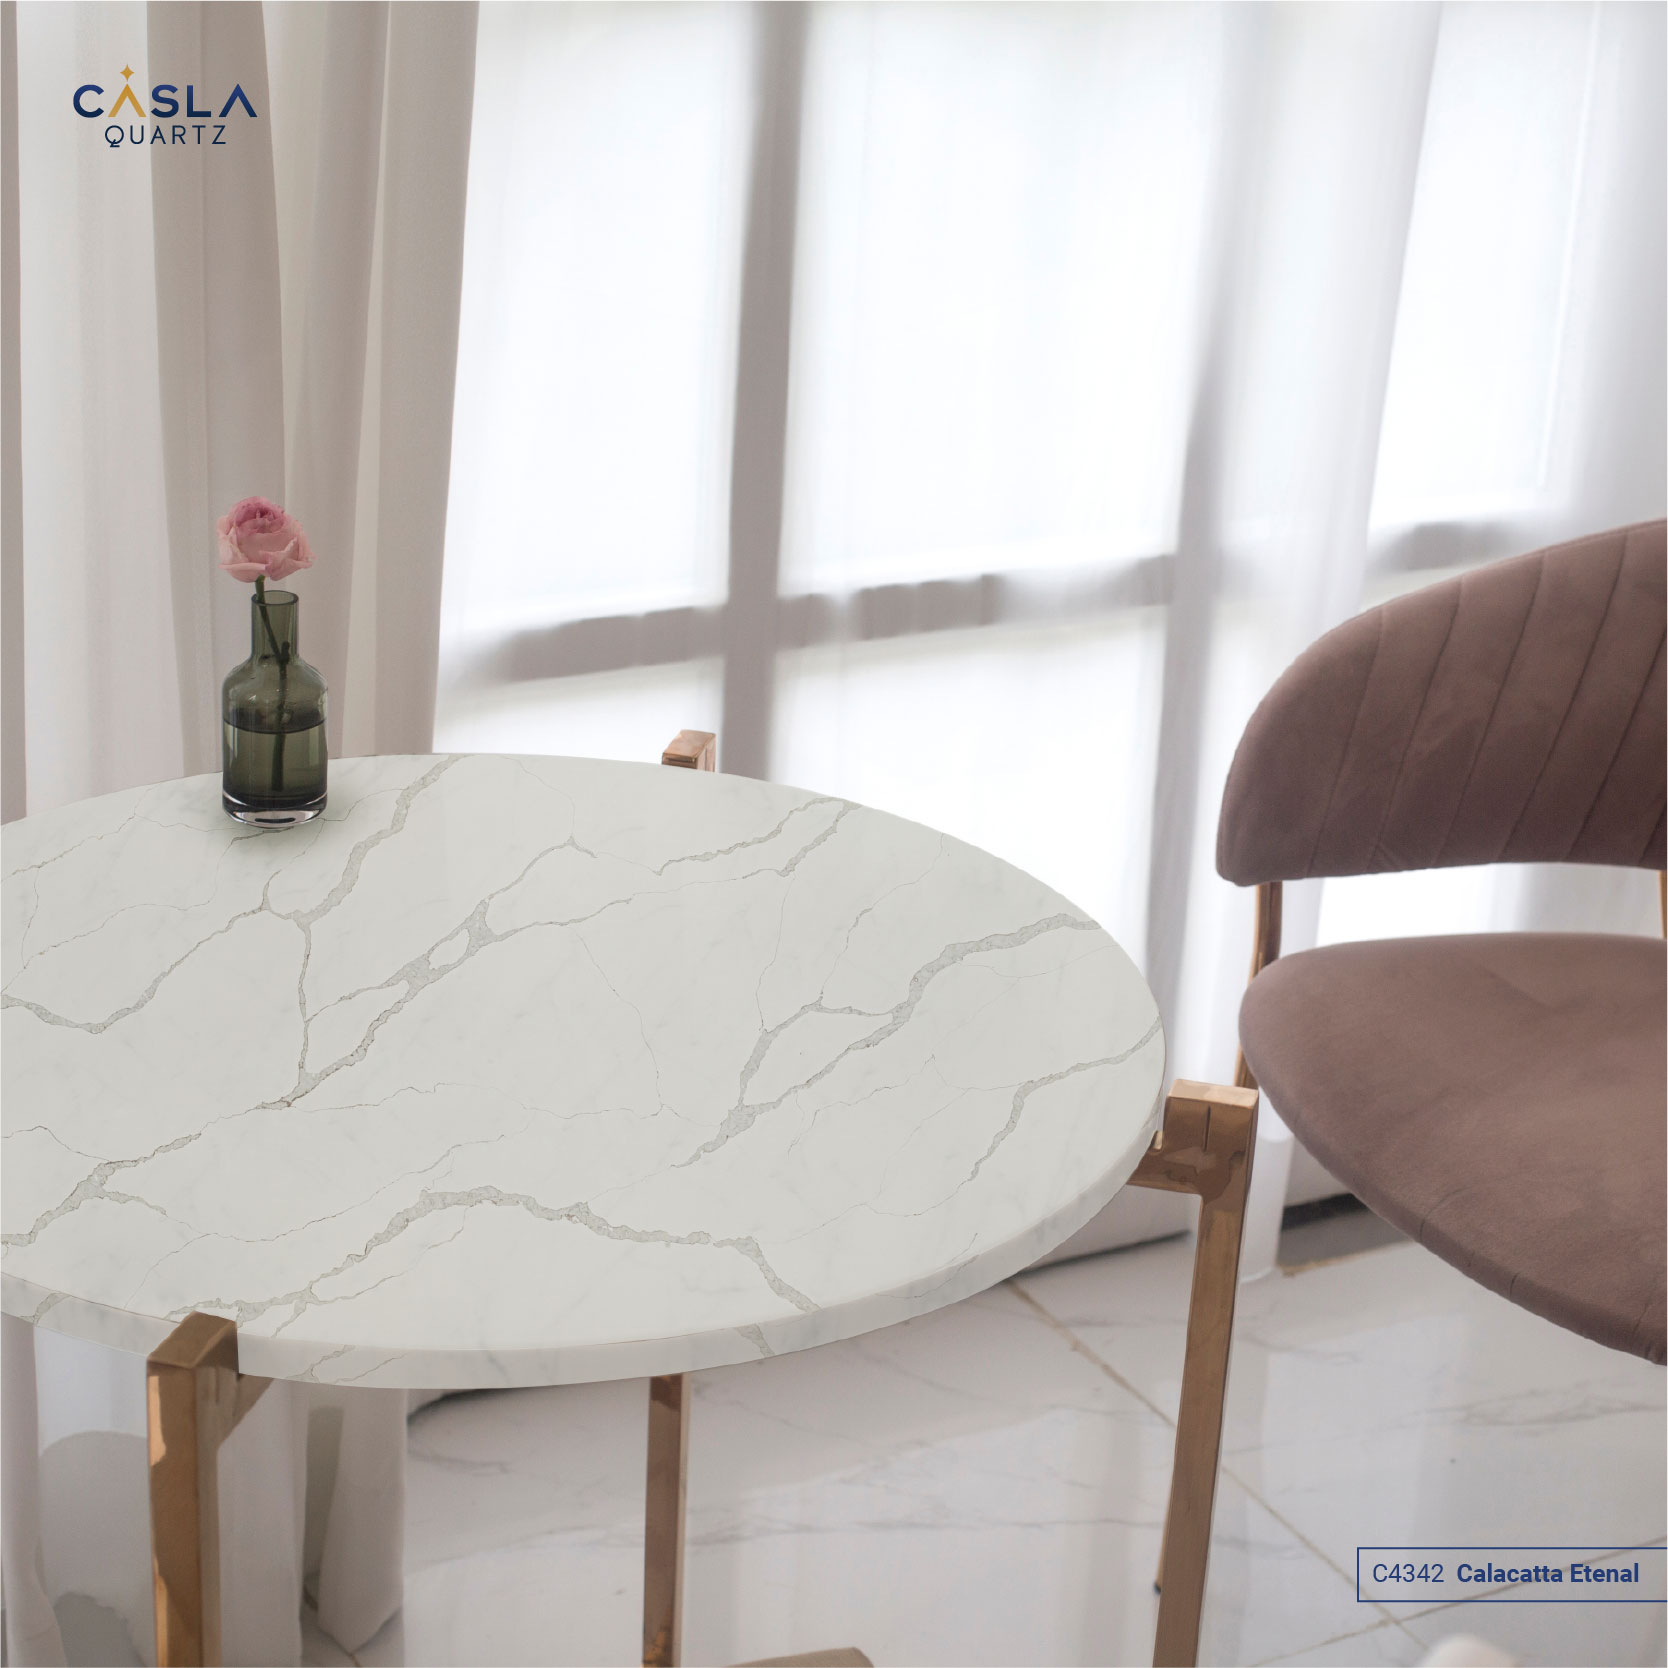 Rất nhiều loại mặt bàn có thể sử dụng đá ốp nhân tạo Caslaquartz như bàn trà, bàn bếp, bàn tiếp khách, bàn phòng họp.